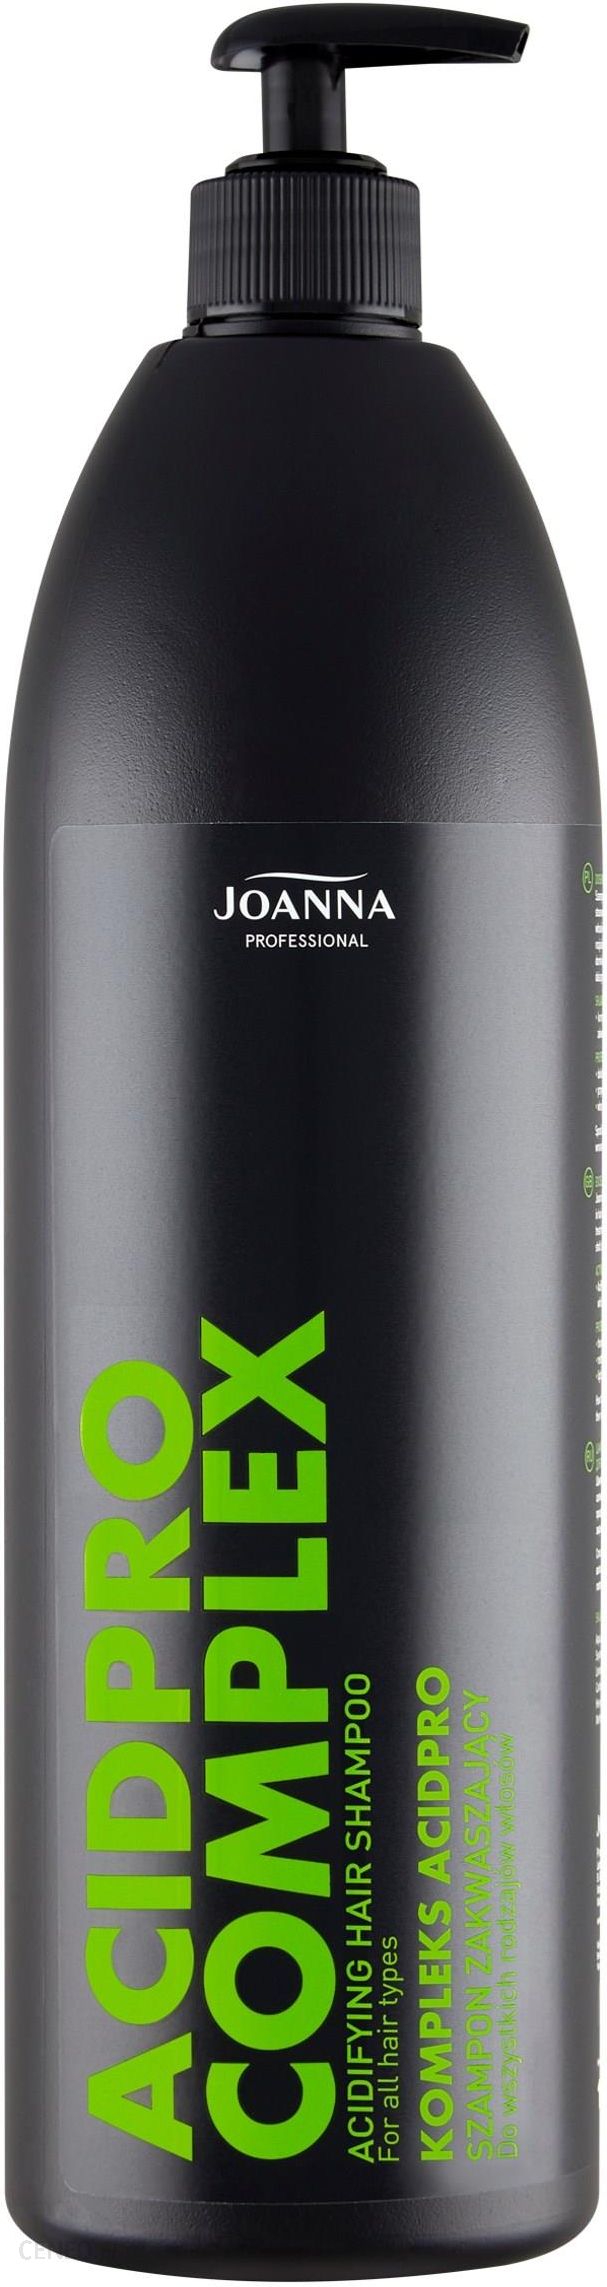 joanna szampon wizaz acid